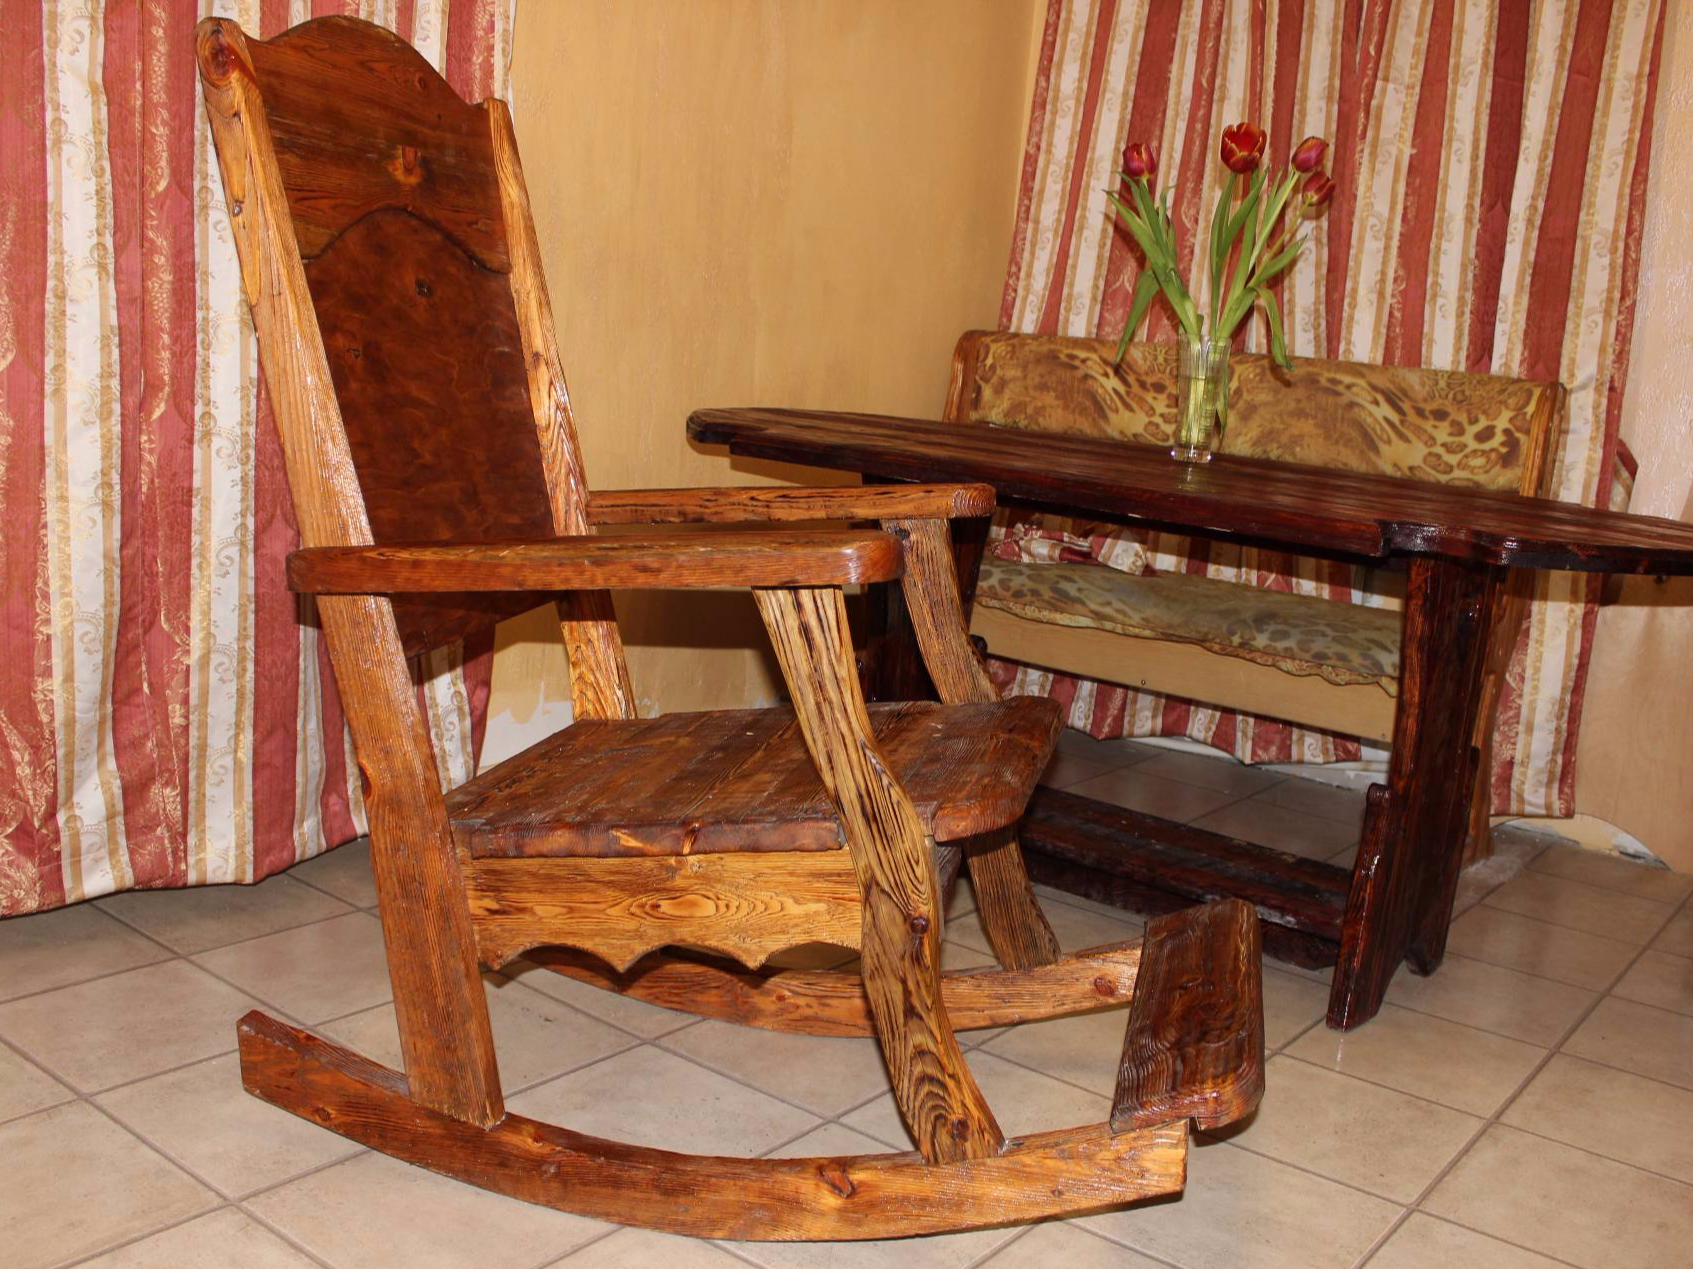 мебель из дерева на заказ в Жуковском, мебель из дерева на заказ в Раменском, мебель из дерева на заказ в Люберцах, мебель из массива, мебель из натурального дерева, мебель на заказ - Olmani